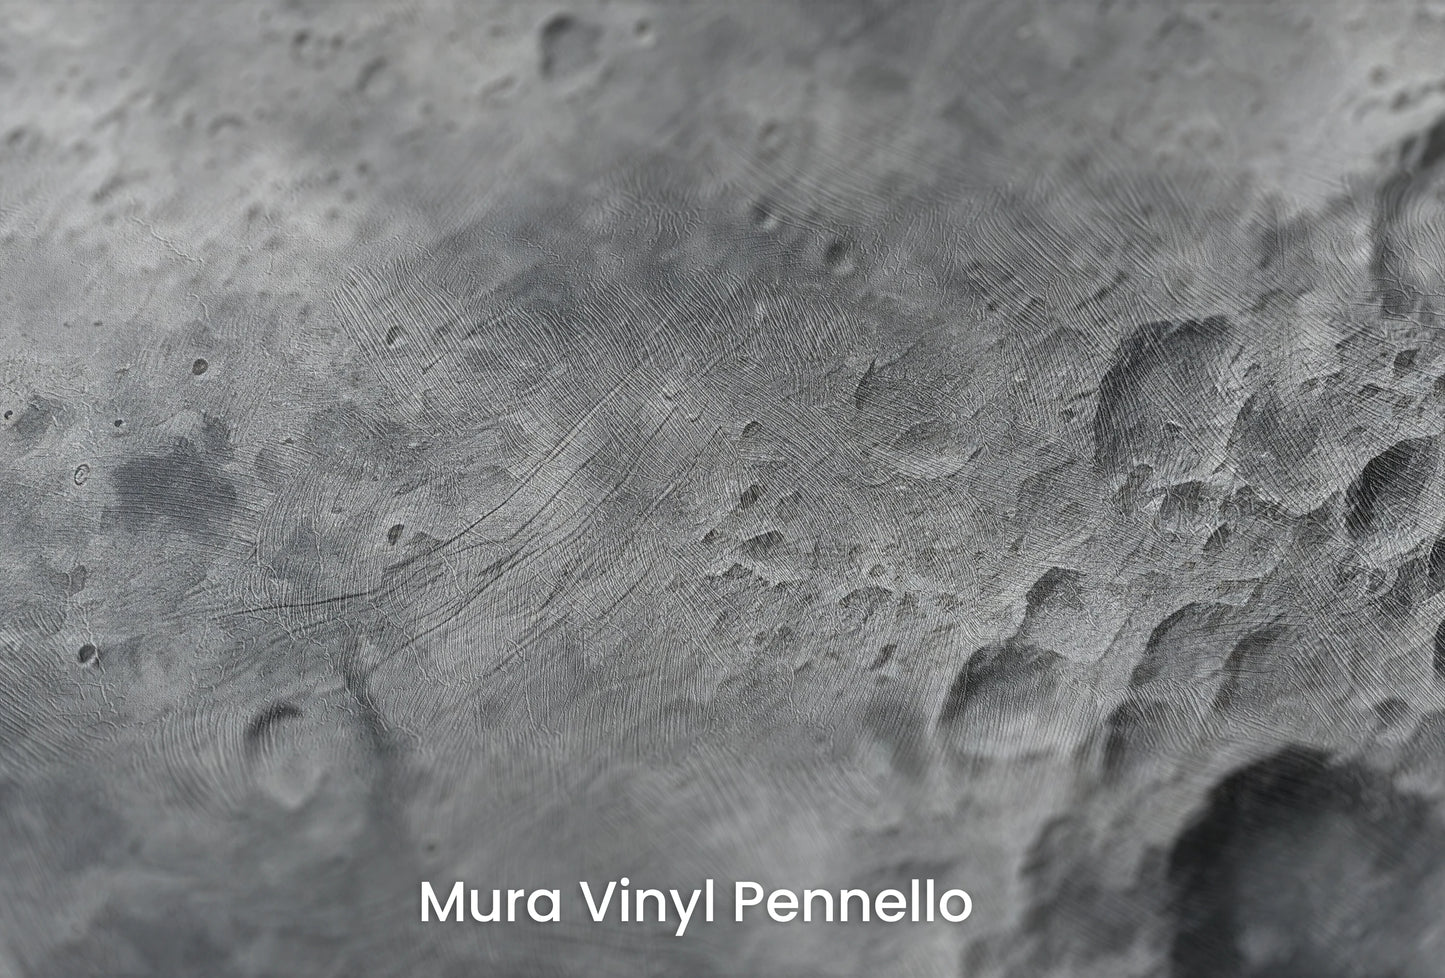 Zbliżenie na artystyczną fototapetę o nazwie Lunar Detail na podłożu Mura Vinyl Pennello - faktura pociągnięć pędzla malarskiego.